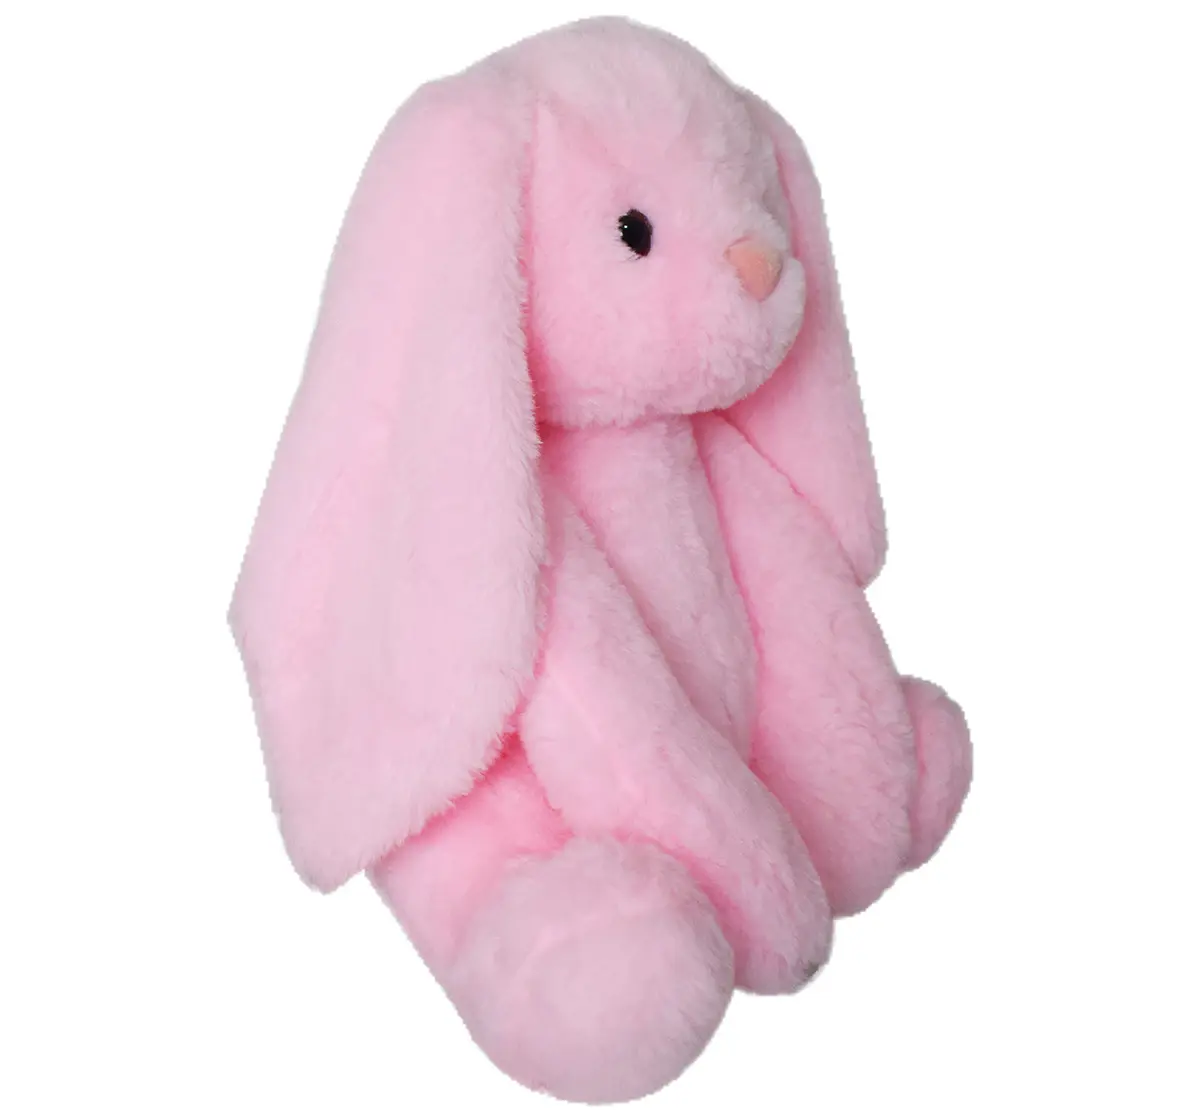 Mirada 35 Cm Bunny Soft Toy Pink 3Y+